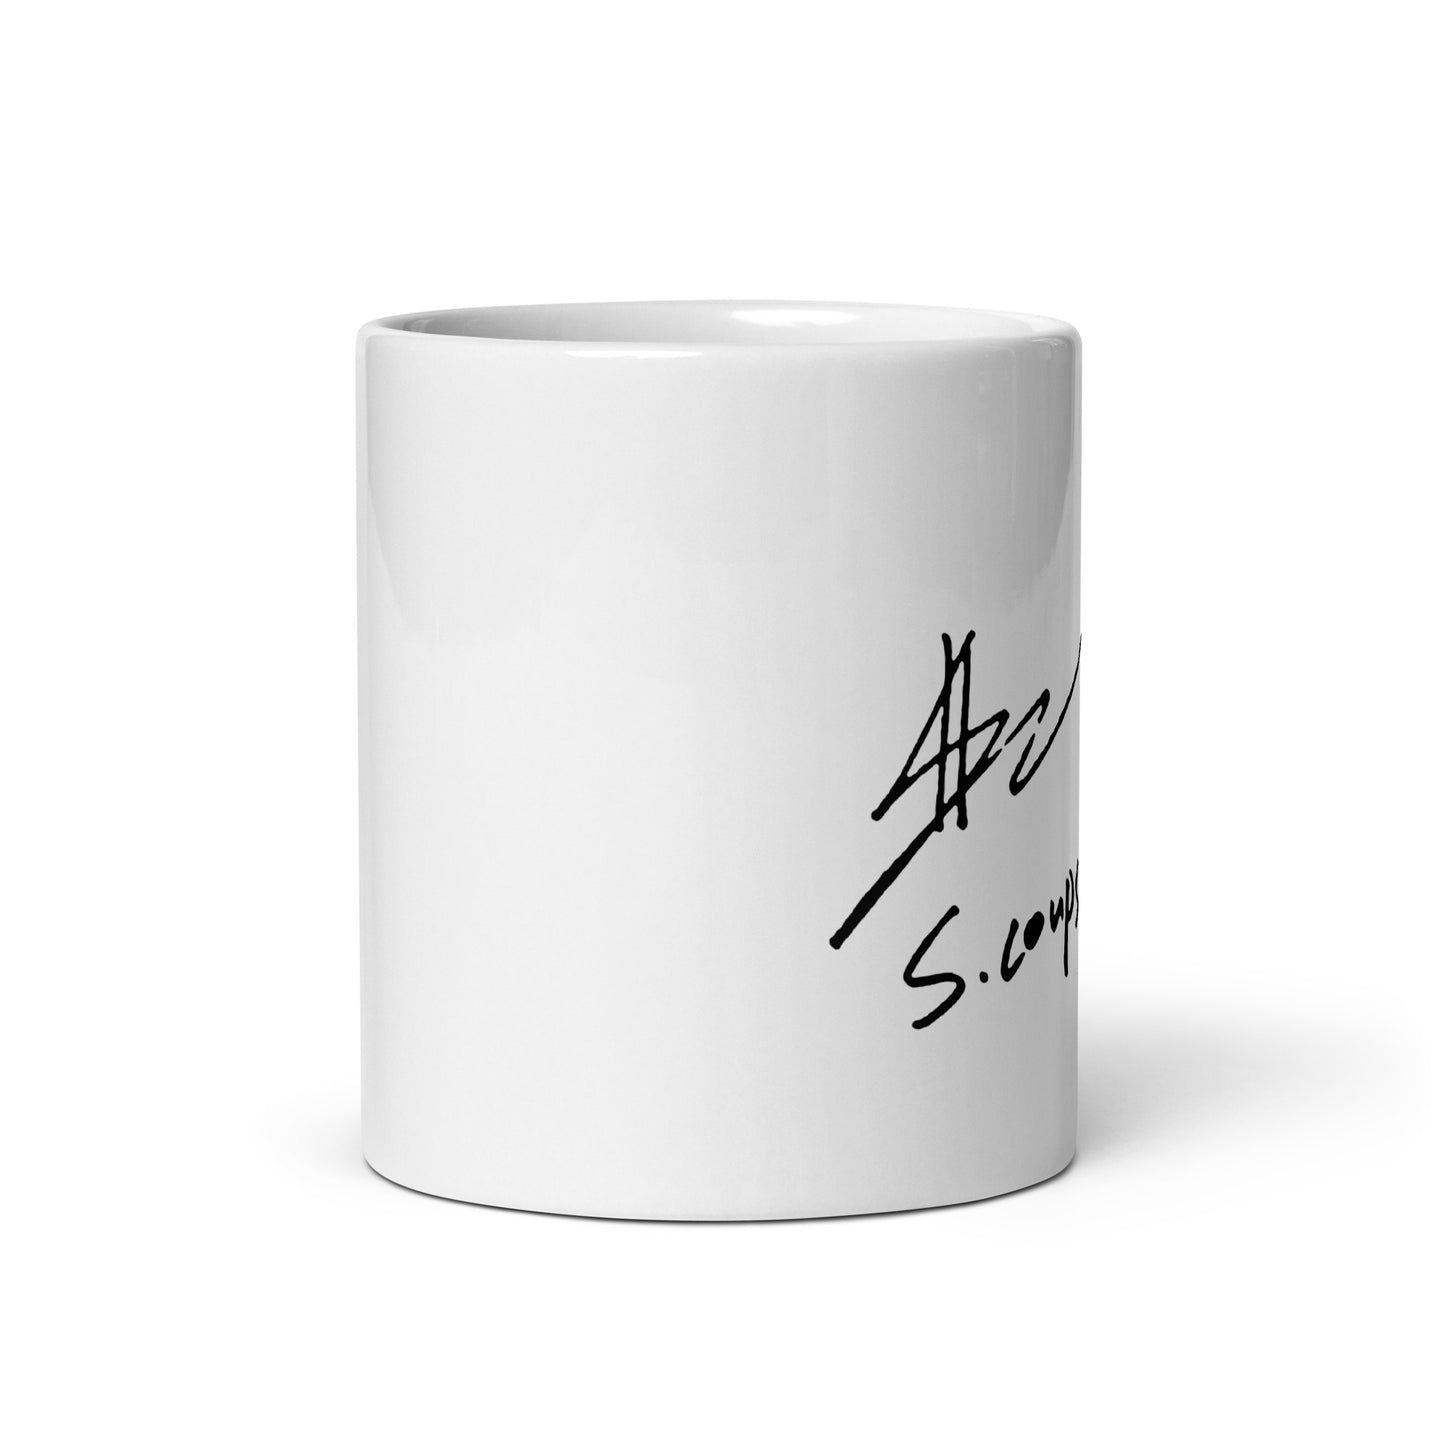 SEVENTEEN S.Coups, Choi Seung Cheol Signature Ceramic Mug